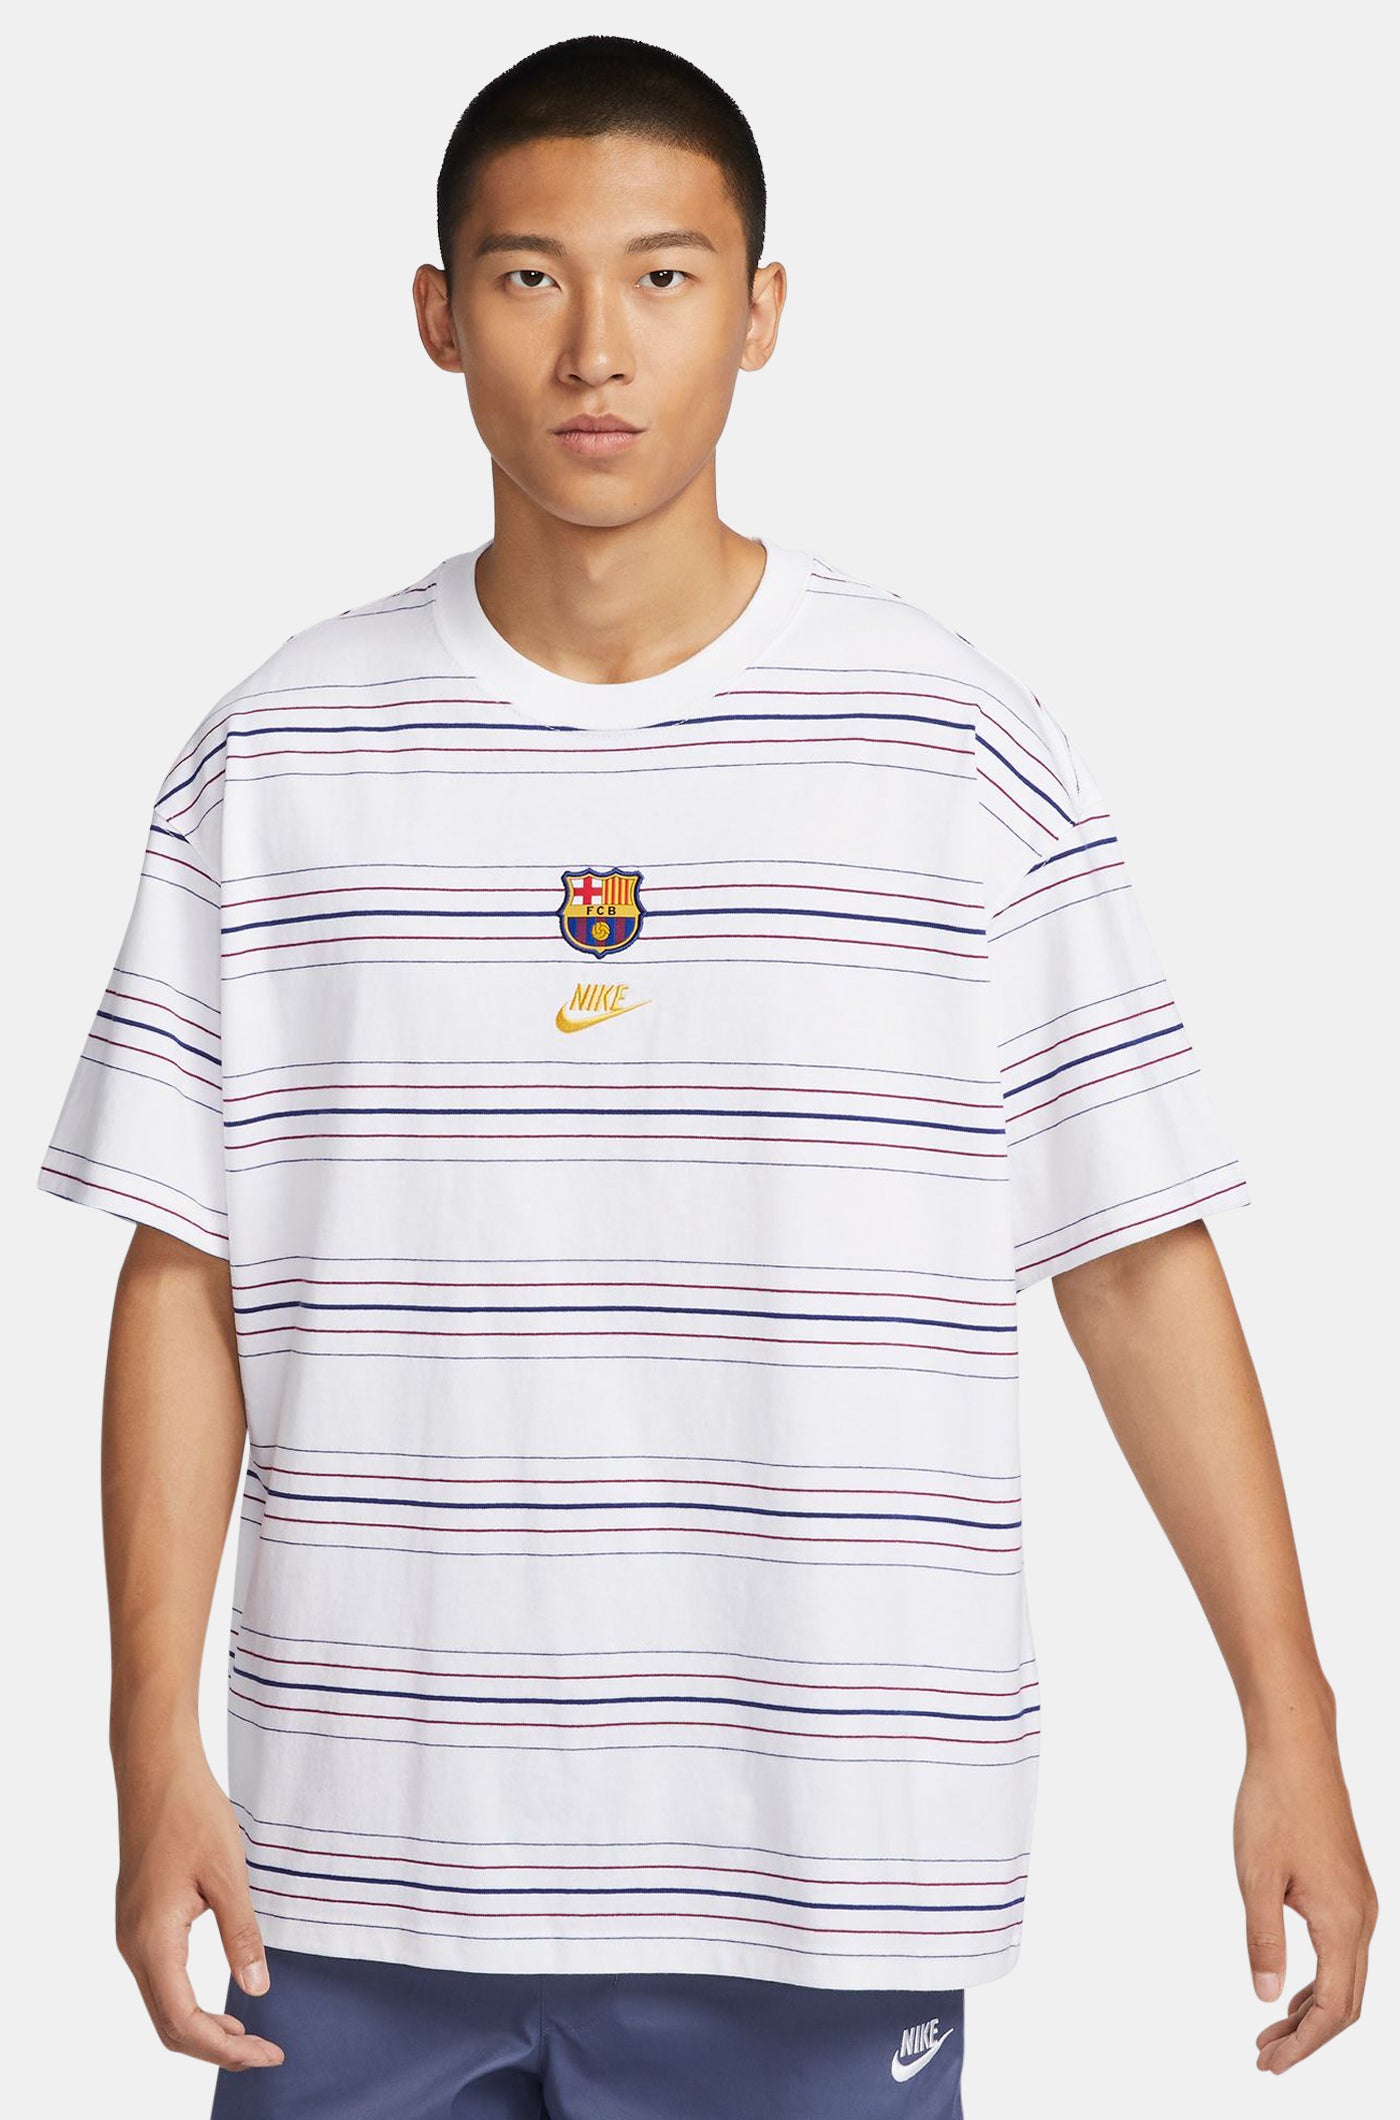 Camiseta blanca escudo Barça Nike – Barça Official Store Spotify Camp Nou